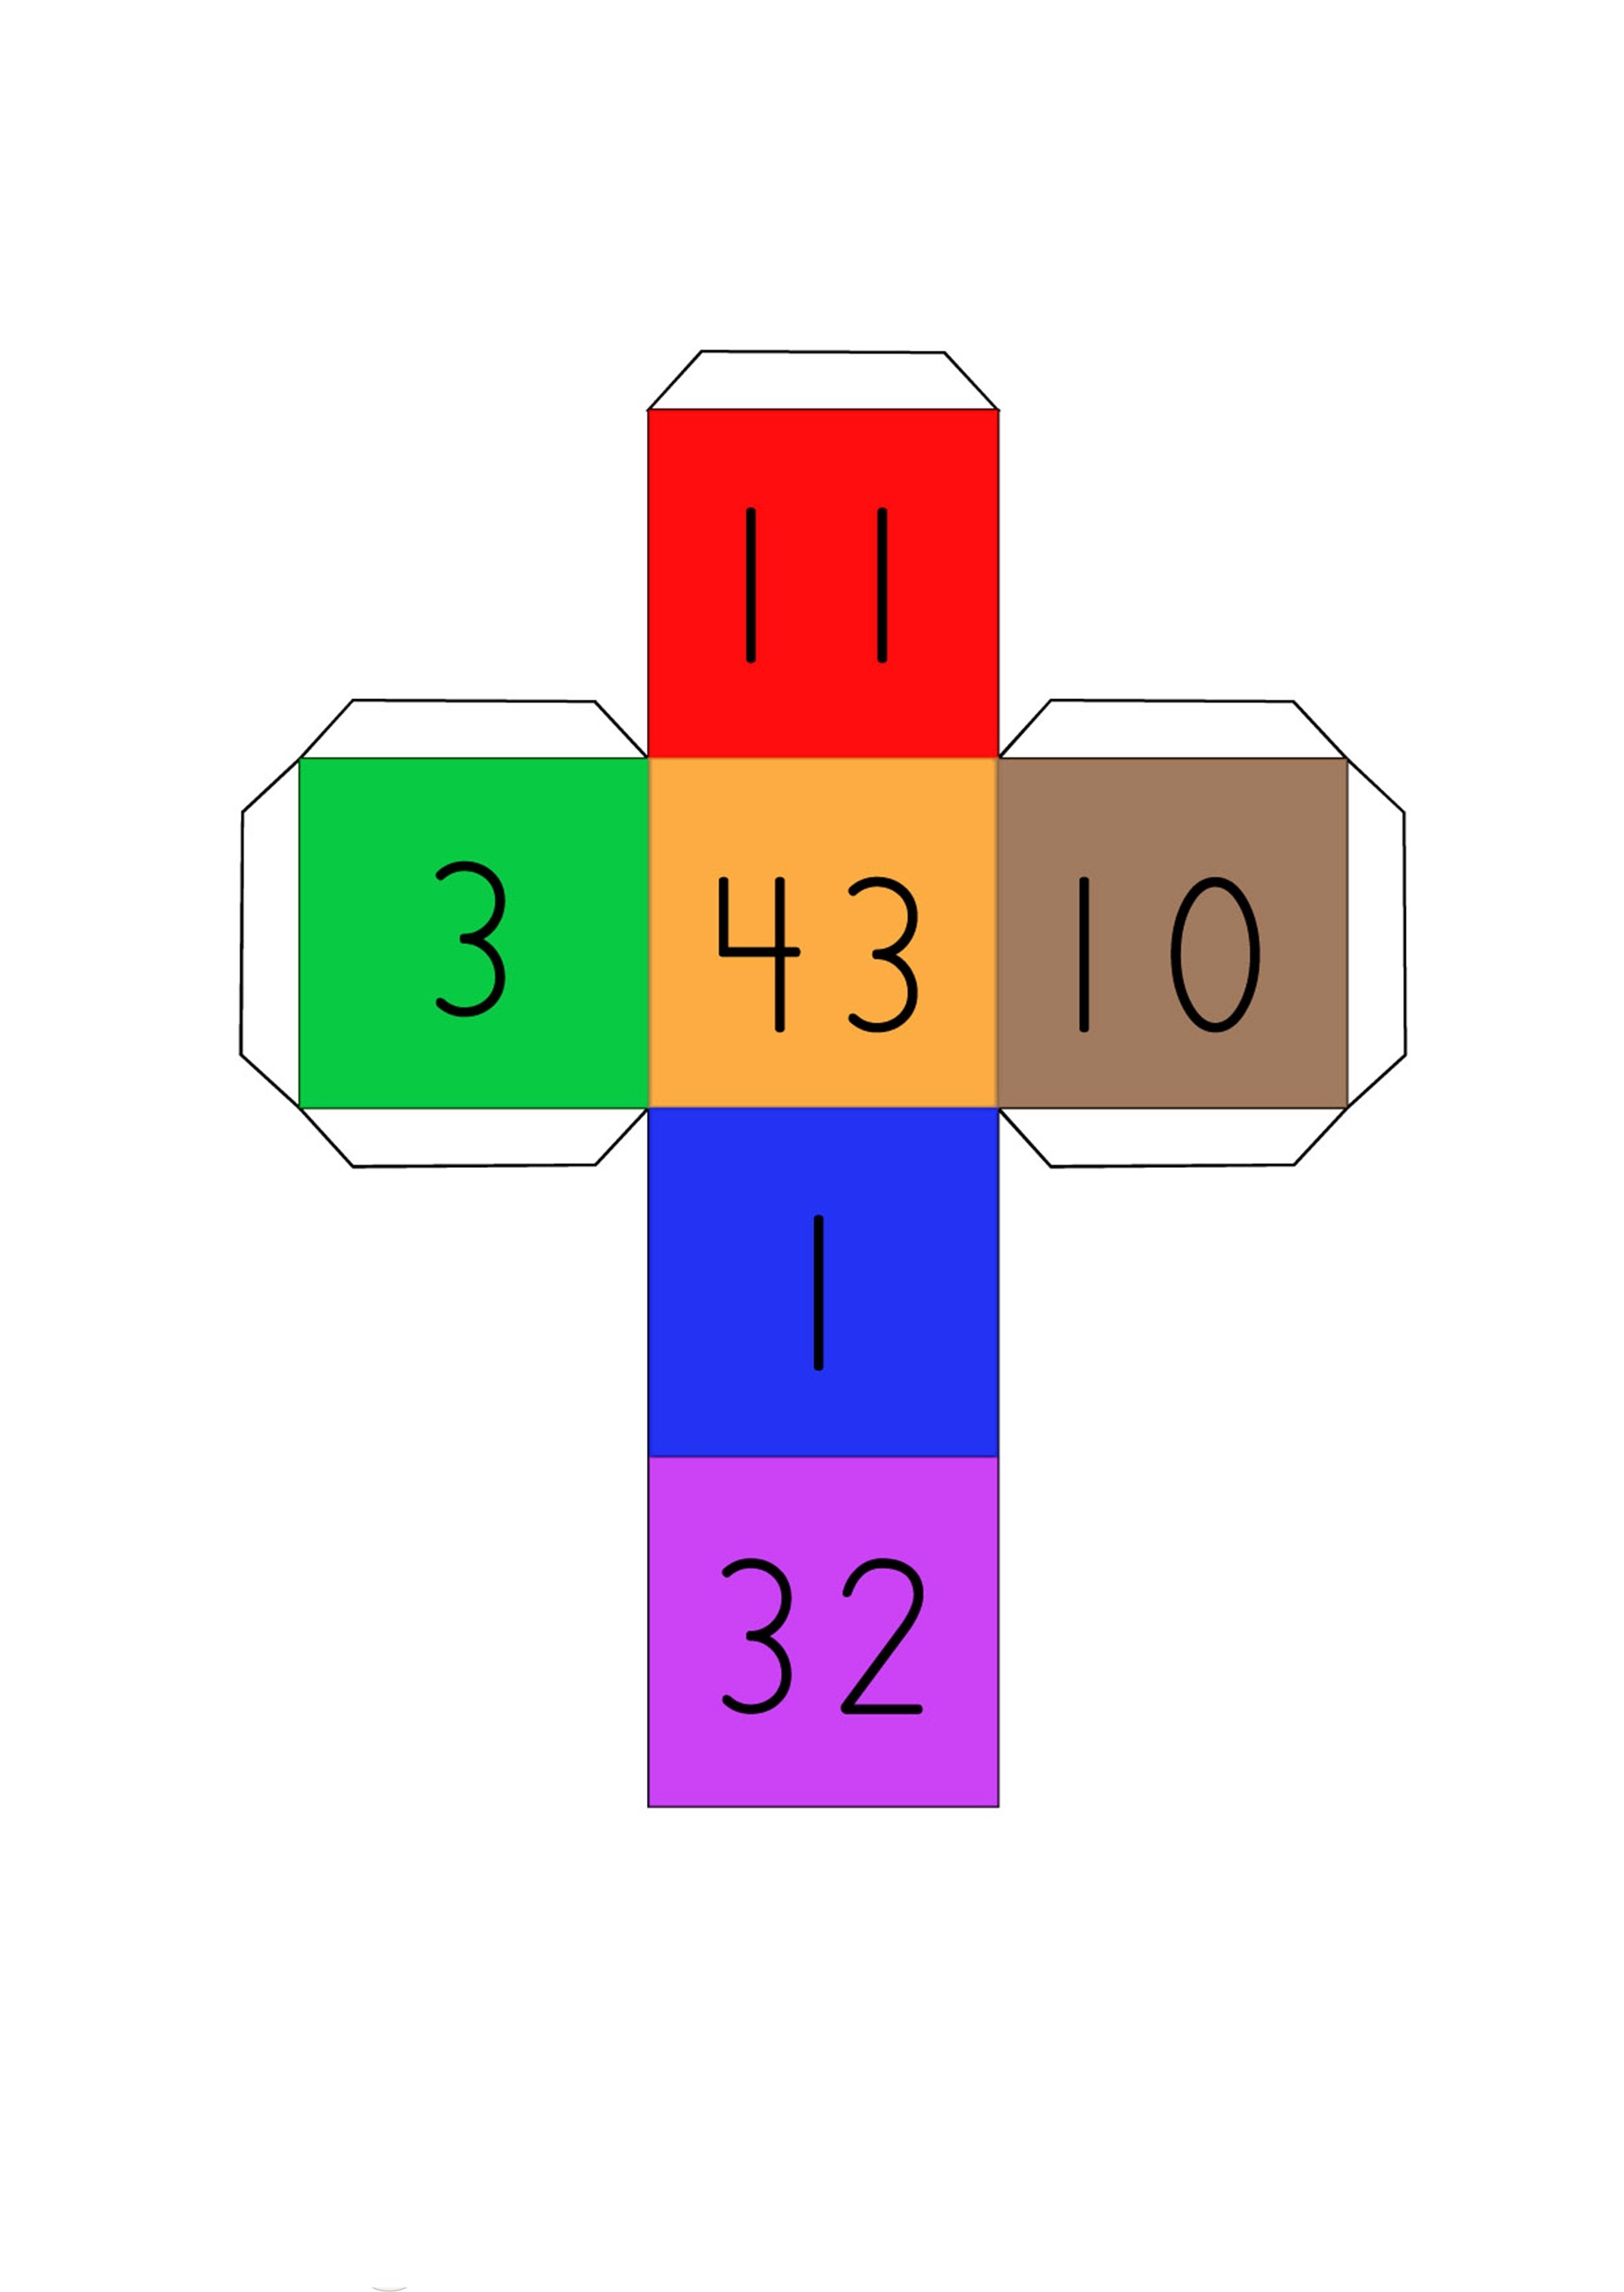 Matemaatikaga seotud mängud Cubico18